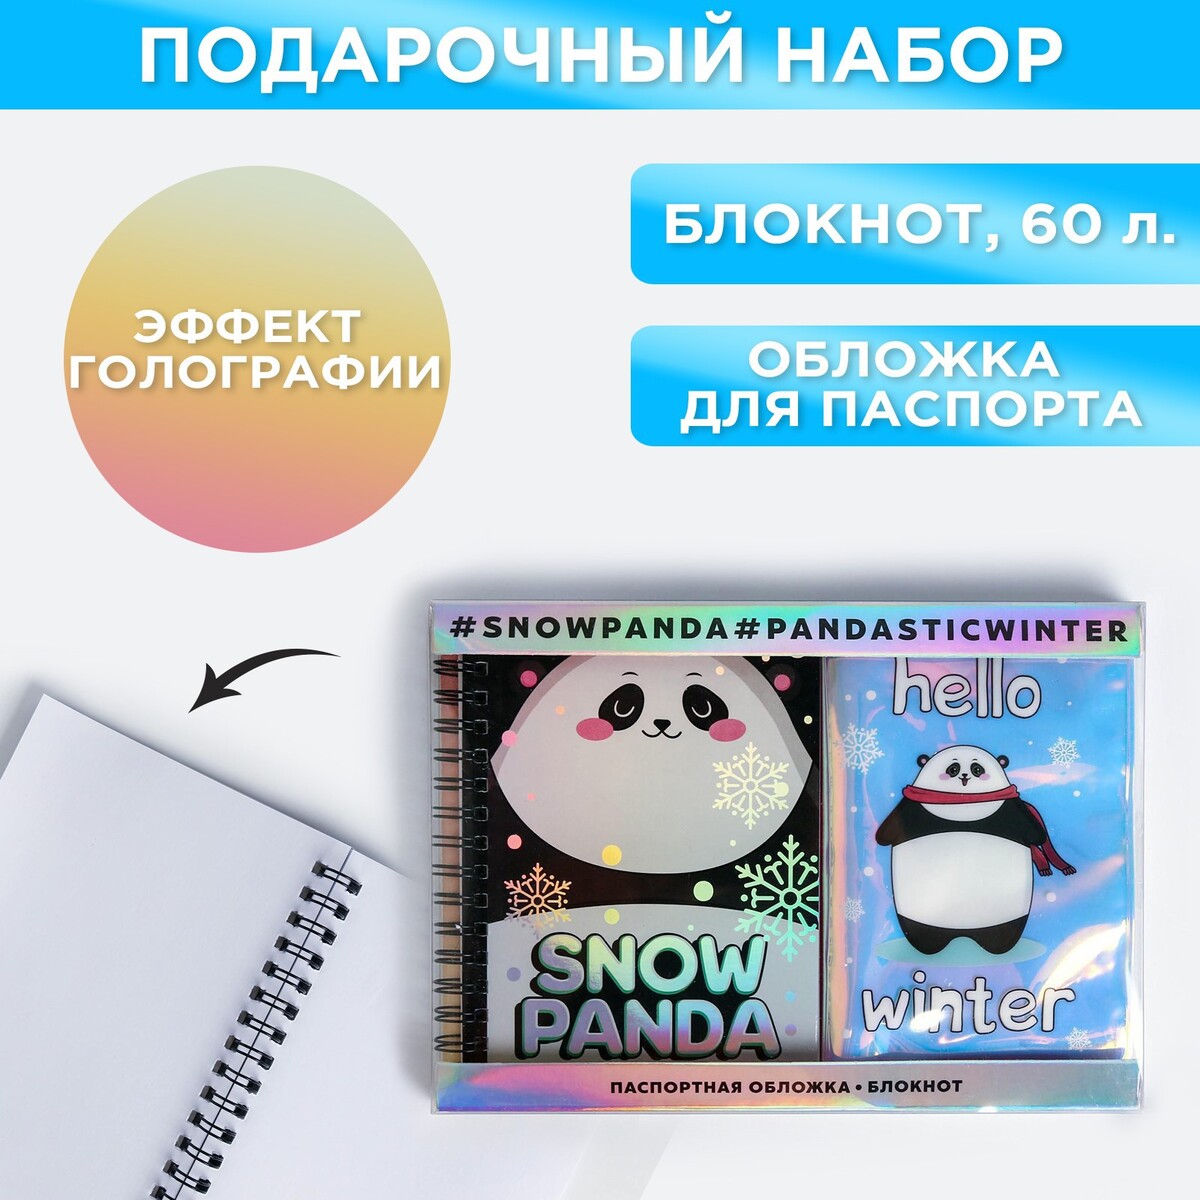 Подарочный набор: голографический блокнот и обложка snow panda набор unicorn snow паспортная обложка облачко и ежедневник облачко